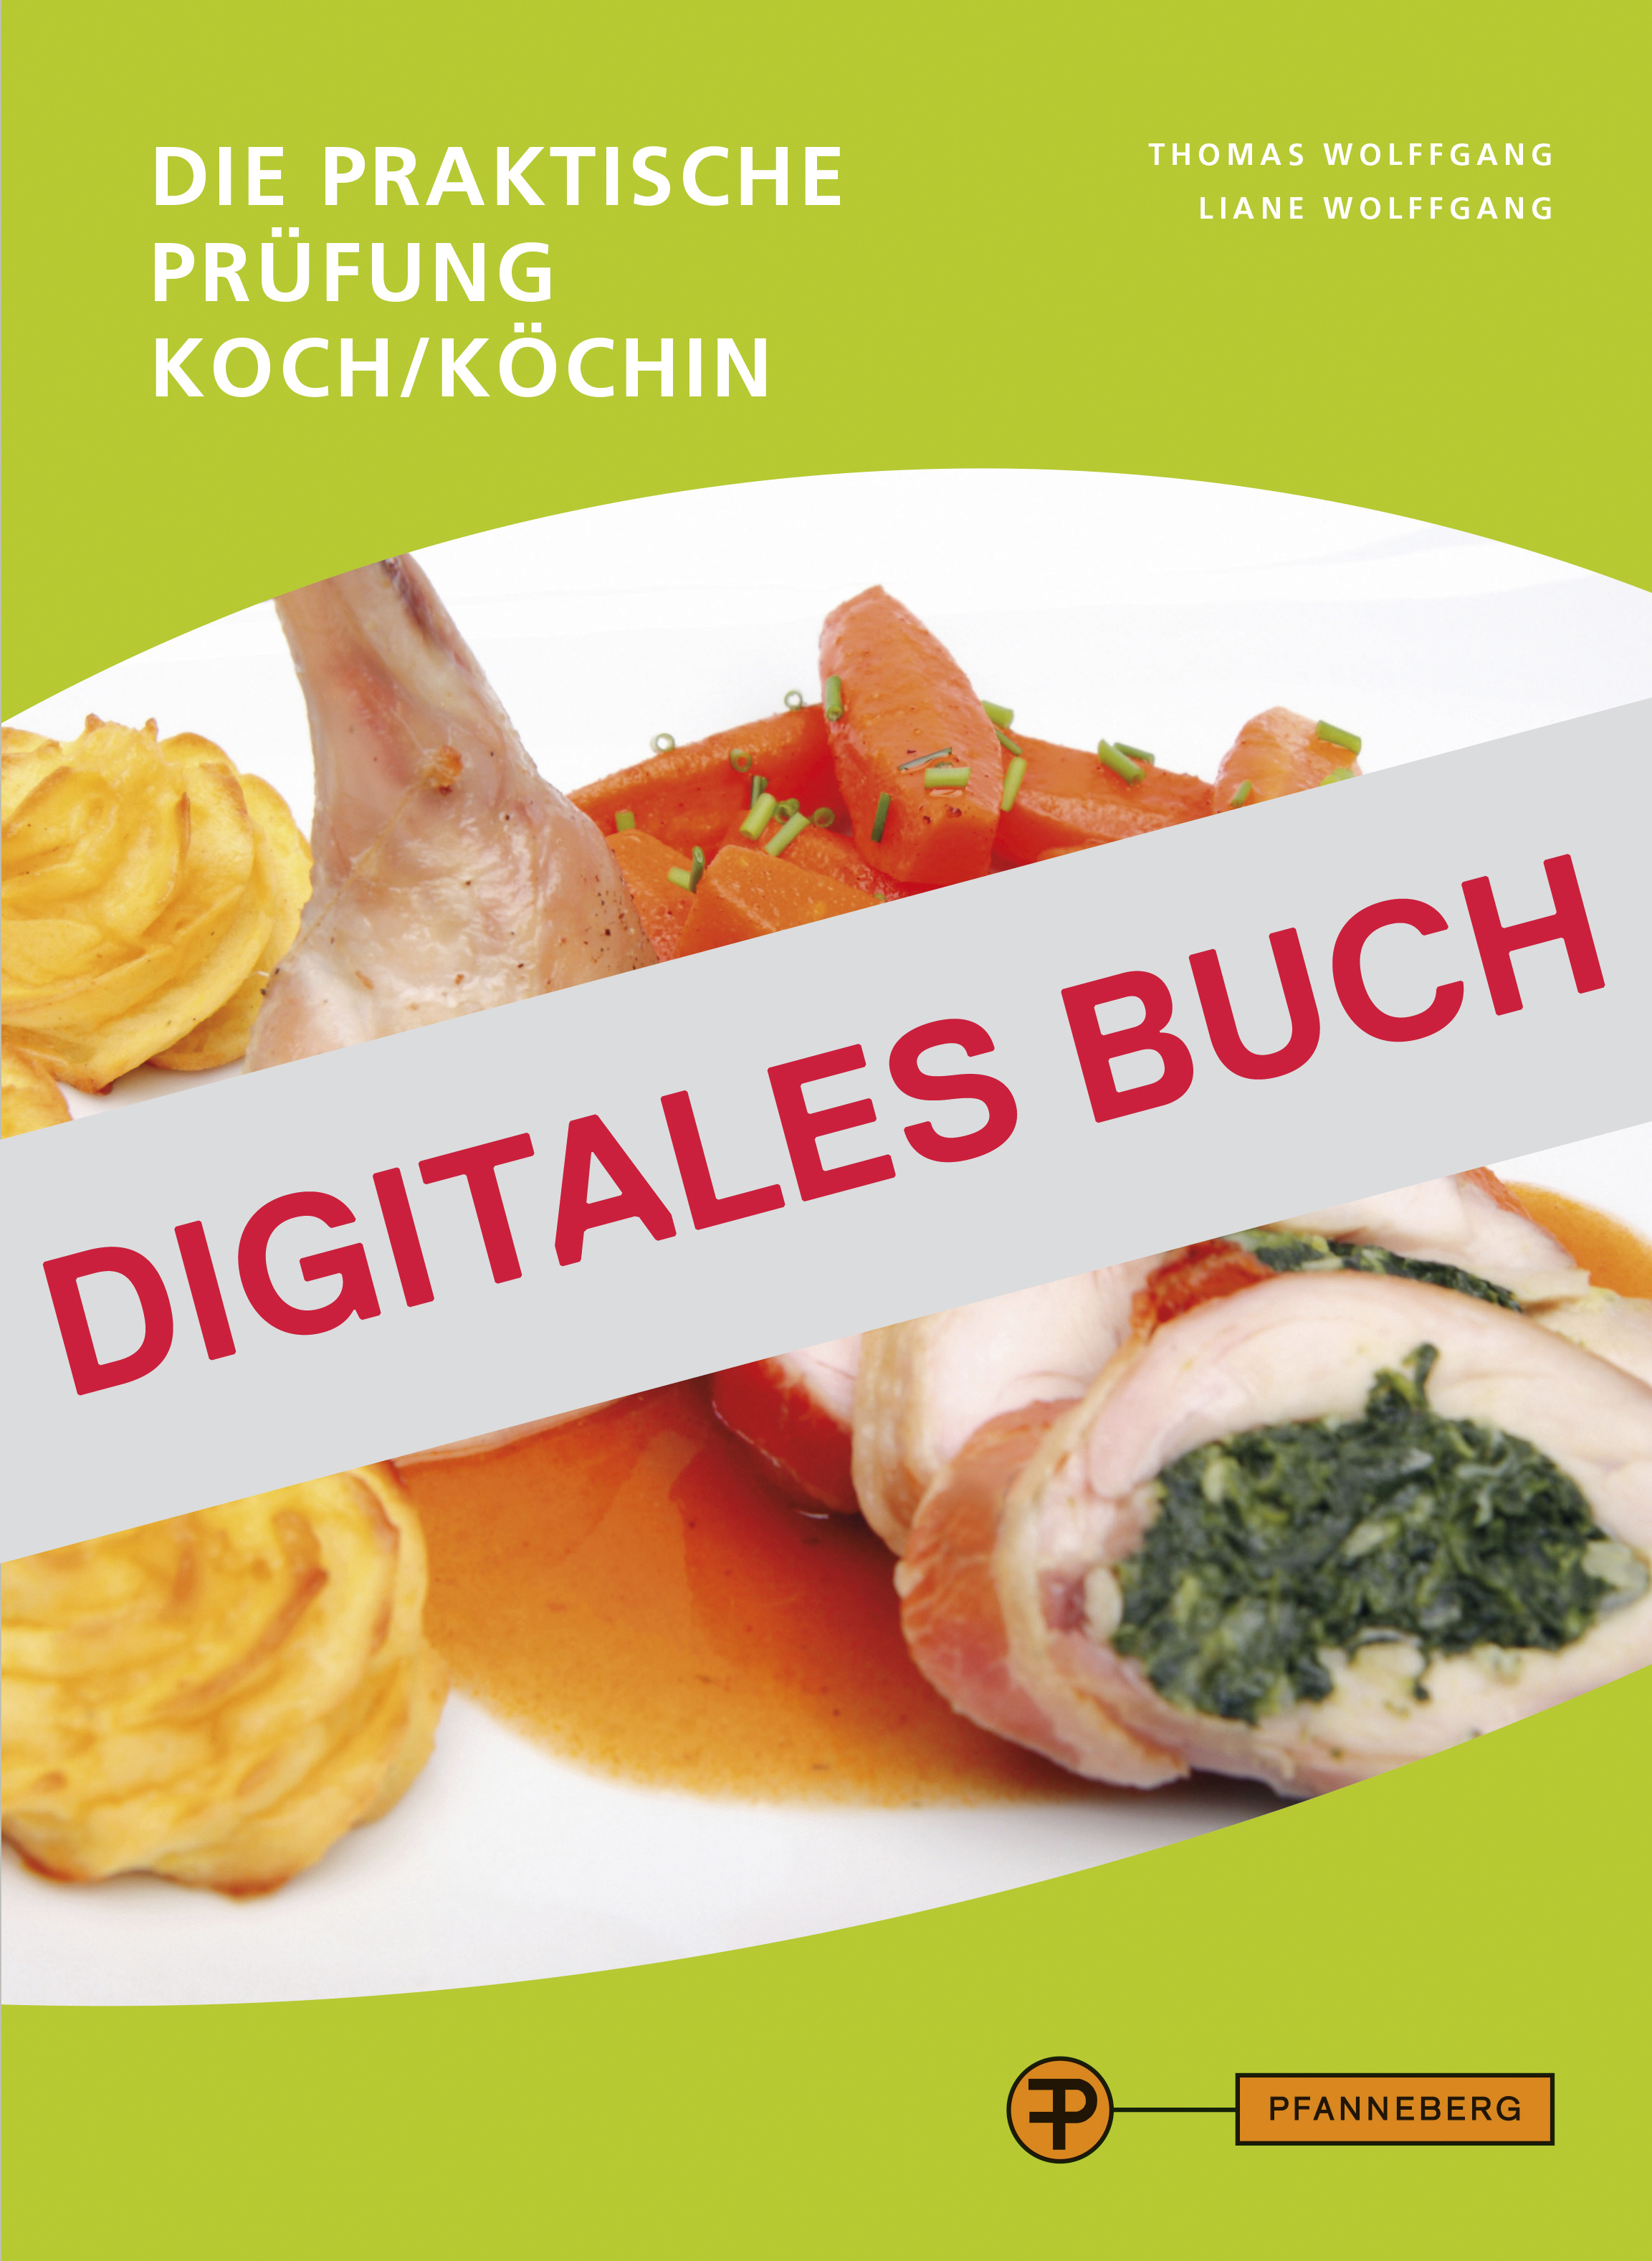 Die praktische Prüfung - Koch/Köchin - Digitales Buch